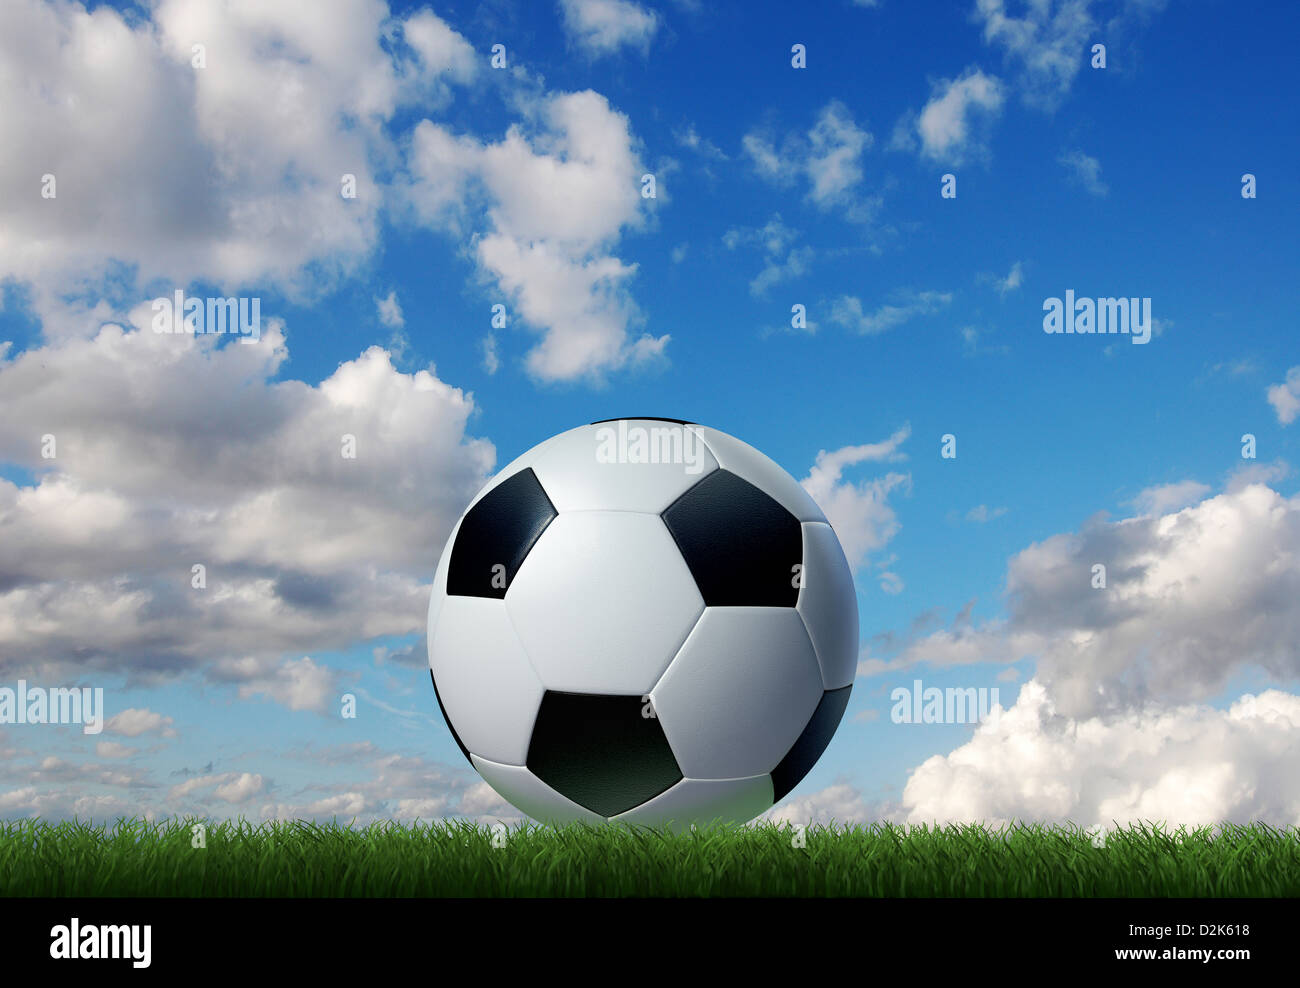 Fußball auf dem Rasen mit Himmel und Wolken im Hintergrund. Erdgeschoss-Seitenansicht. Stockfoto